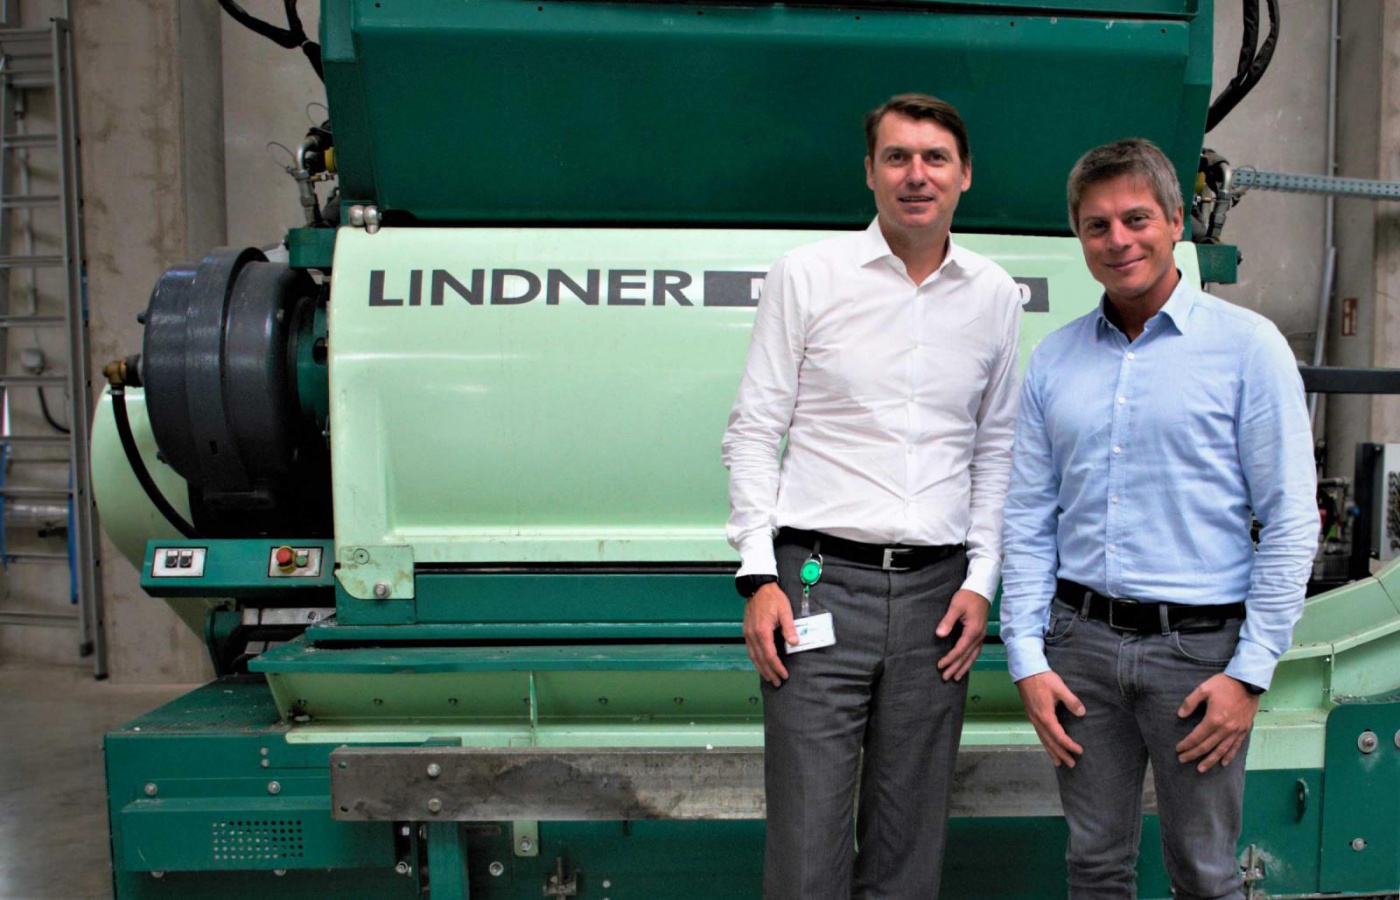 Kooperation von Borealis und Lindner Borealis hat sich dem Upcycling verschrieben und setzt dabei auf Technologie von Lindner